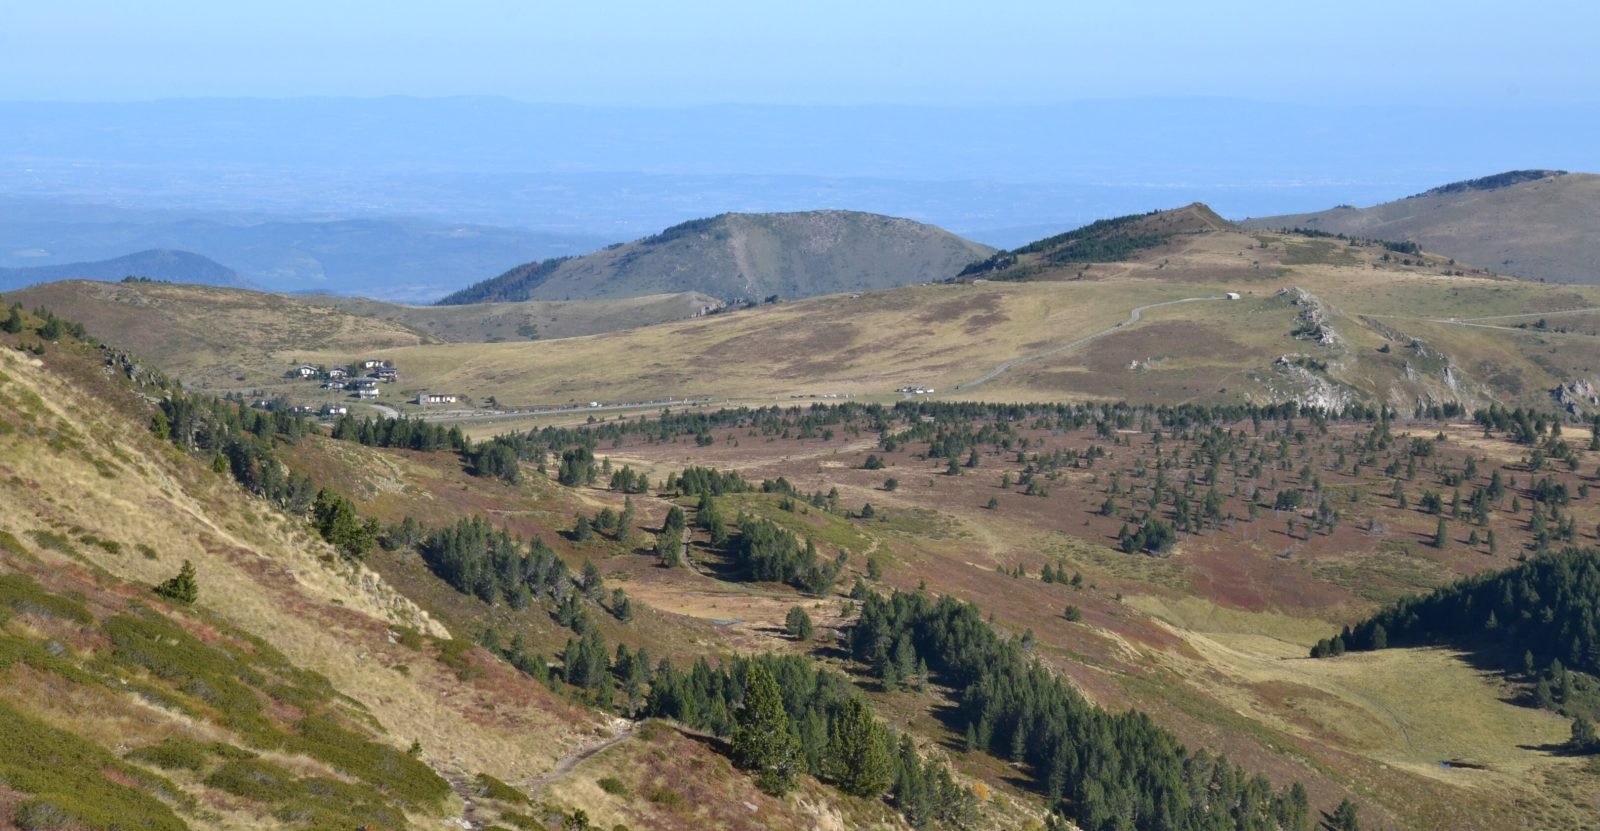 Masyw Montagne Noire, na terenie którego odkryto zdumiewające skamieniałości / źródło: Lucas Destrem, Wikimedia Commons, CC BY-SA 4.0
